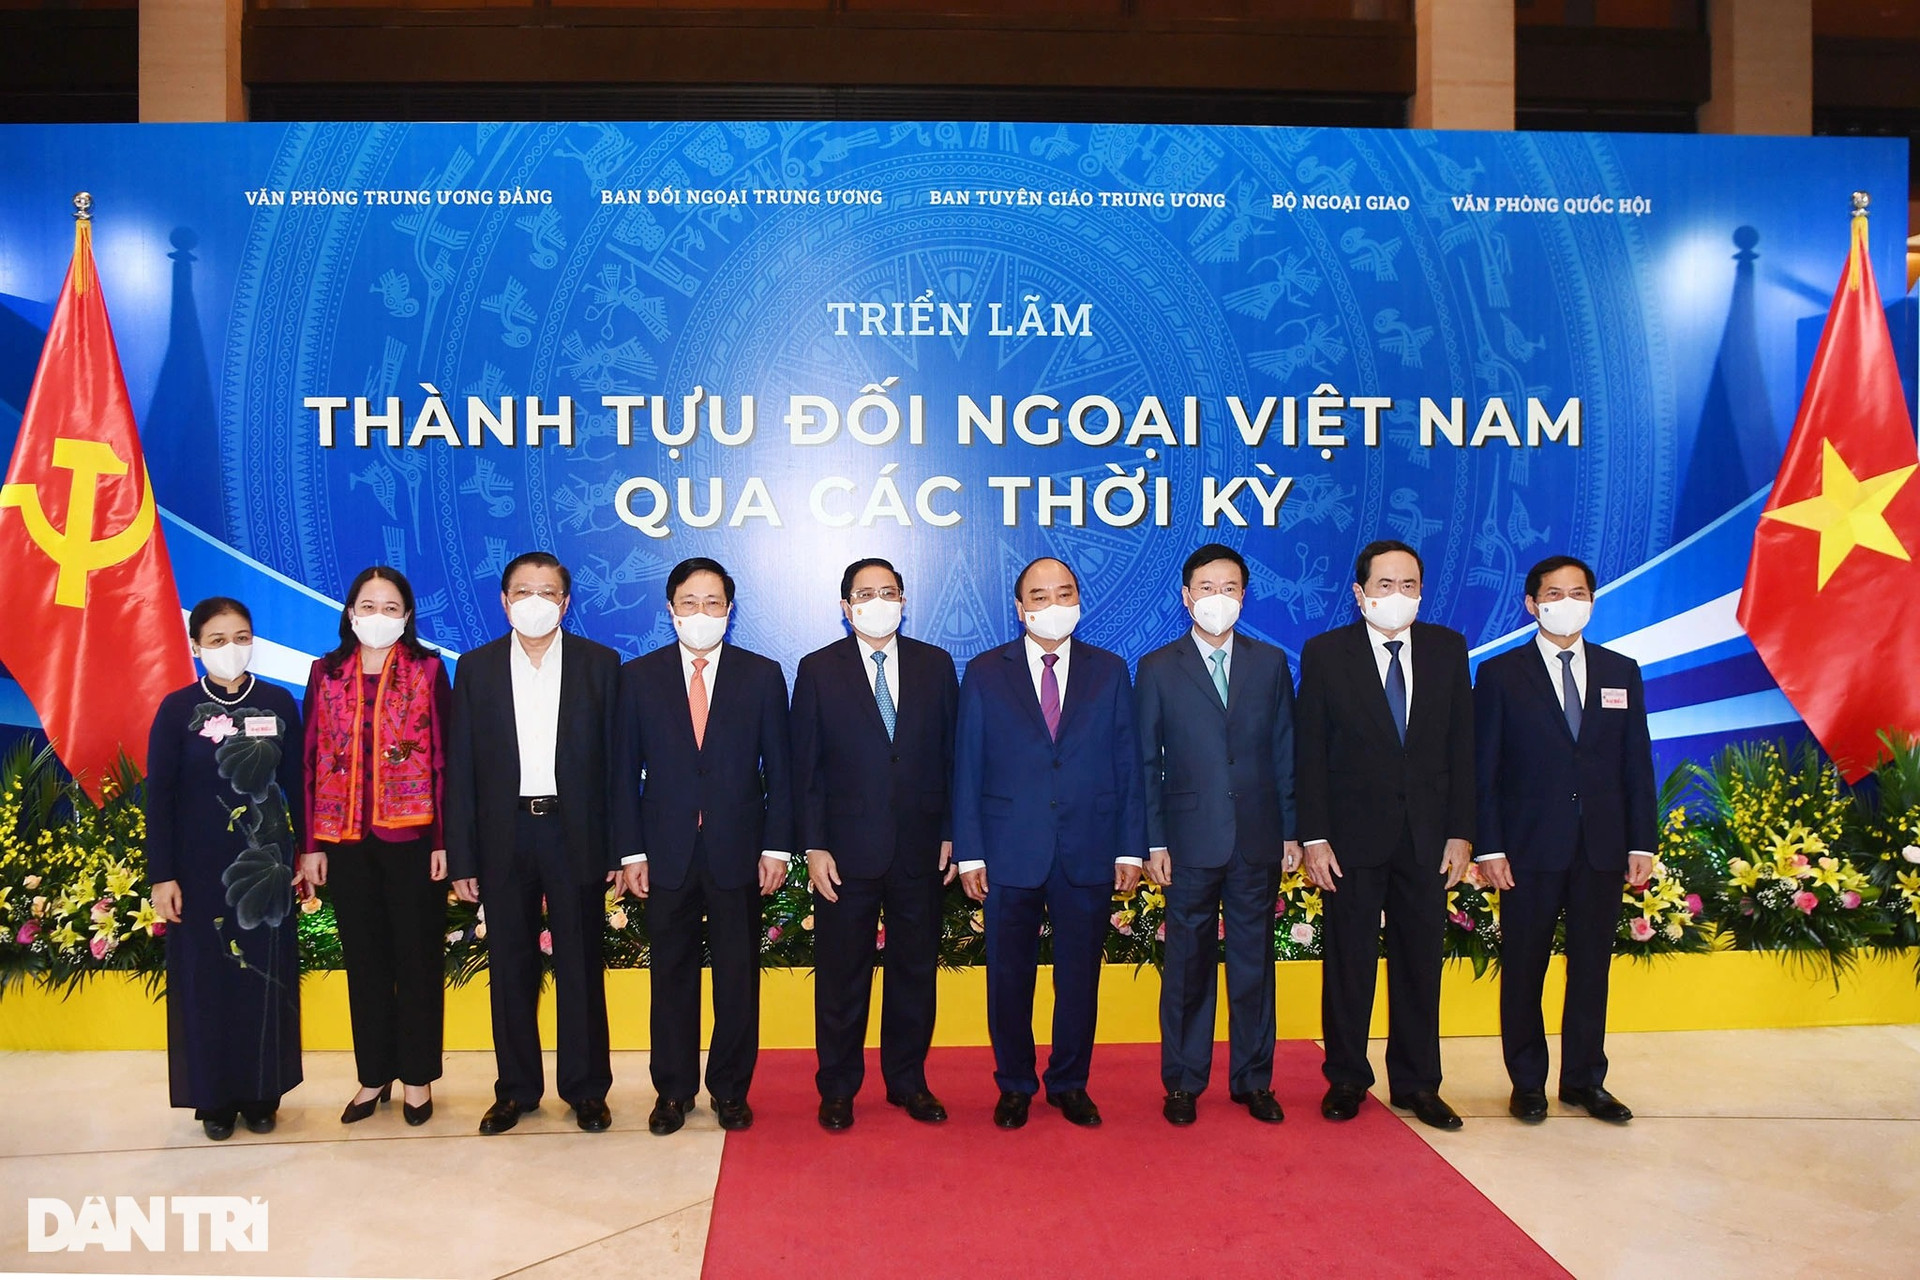 Toàn cảnh Hội nghị Đối ngoại toàn quốc diễn ra trọng thể tại Hà Nội - 13